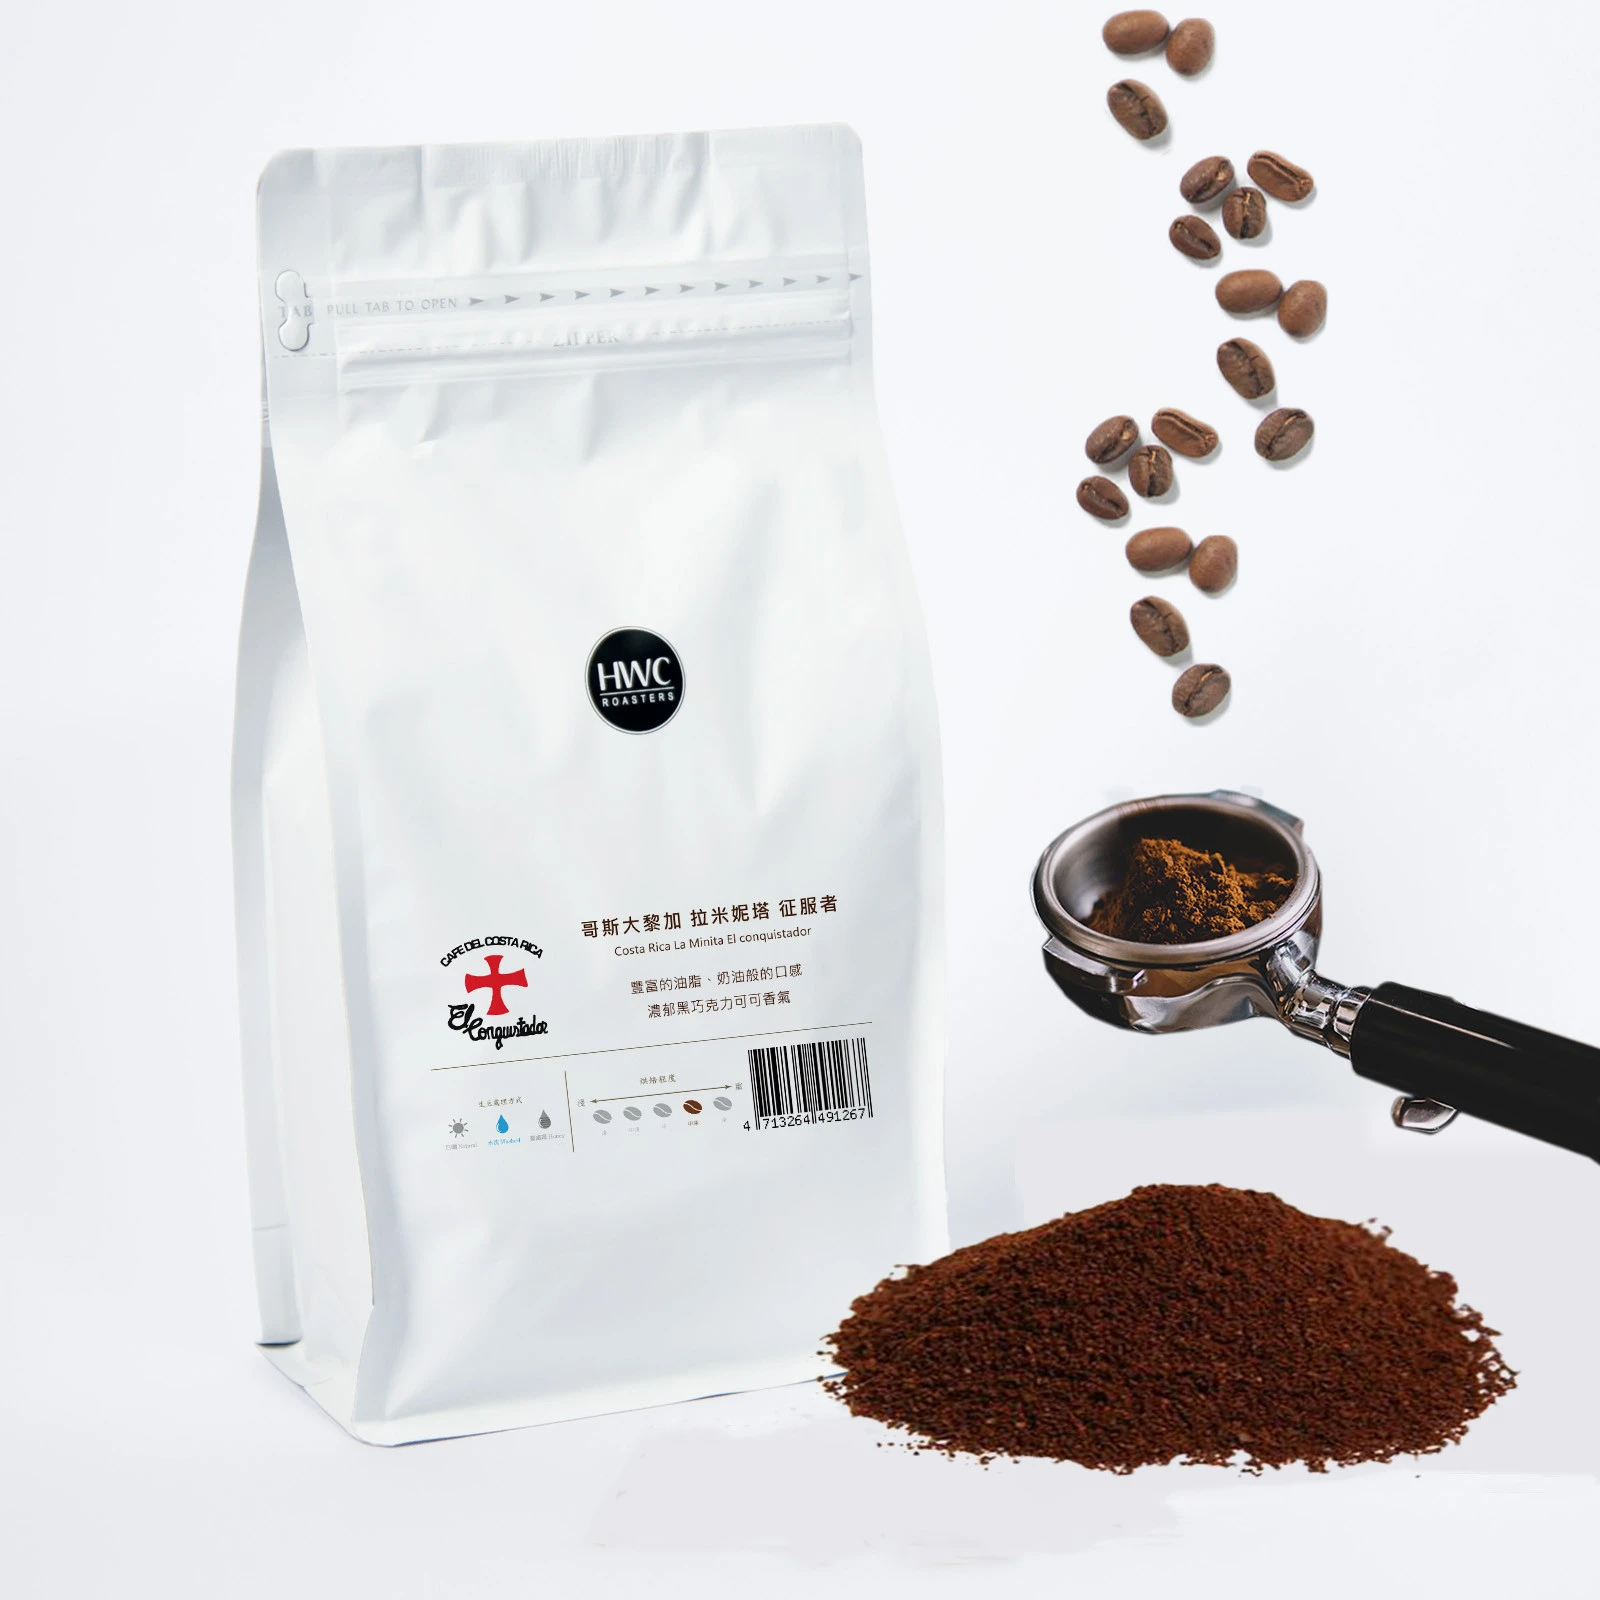 Single Origin Costa Rica La Minita El Conquistador Arabica Coffee Powder Ground Coffee